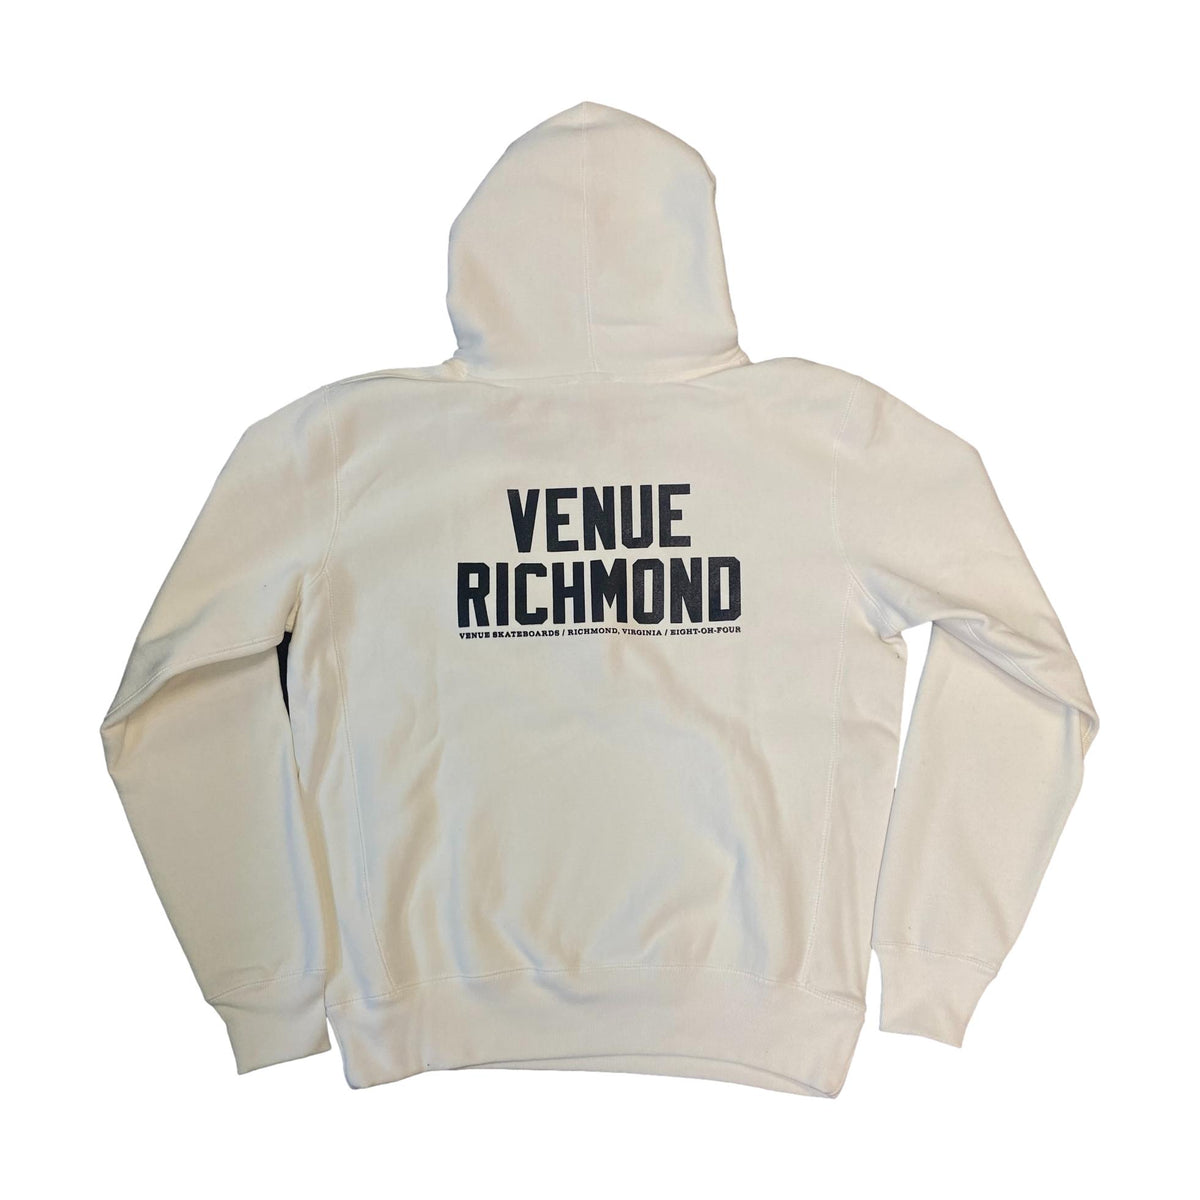 Venue &quot;Venue Richmond&quot; Premium Hooded Sweatshirt - Venue Skateboards